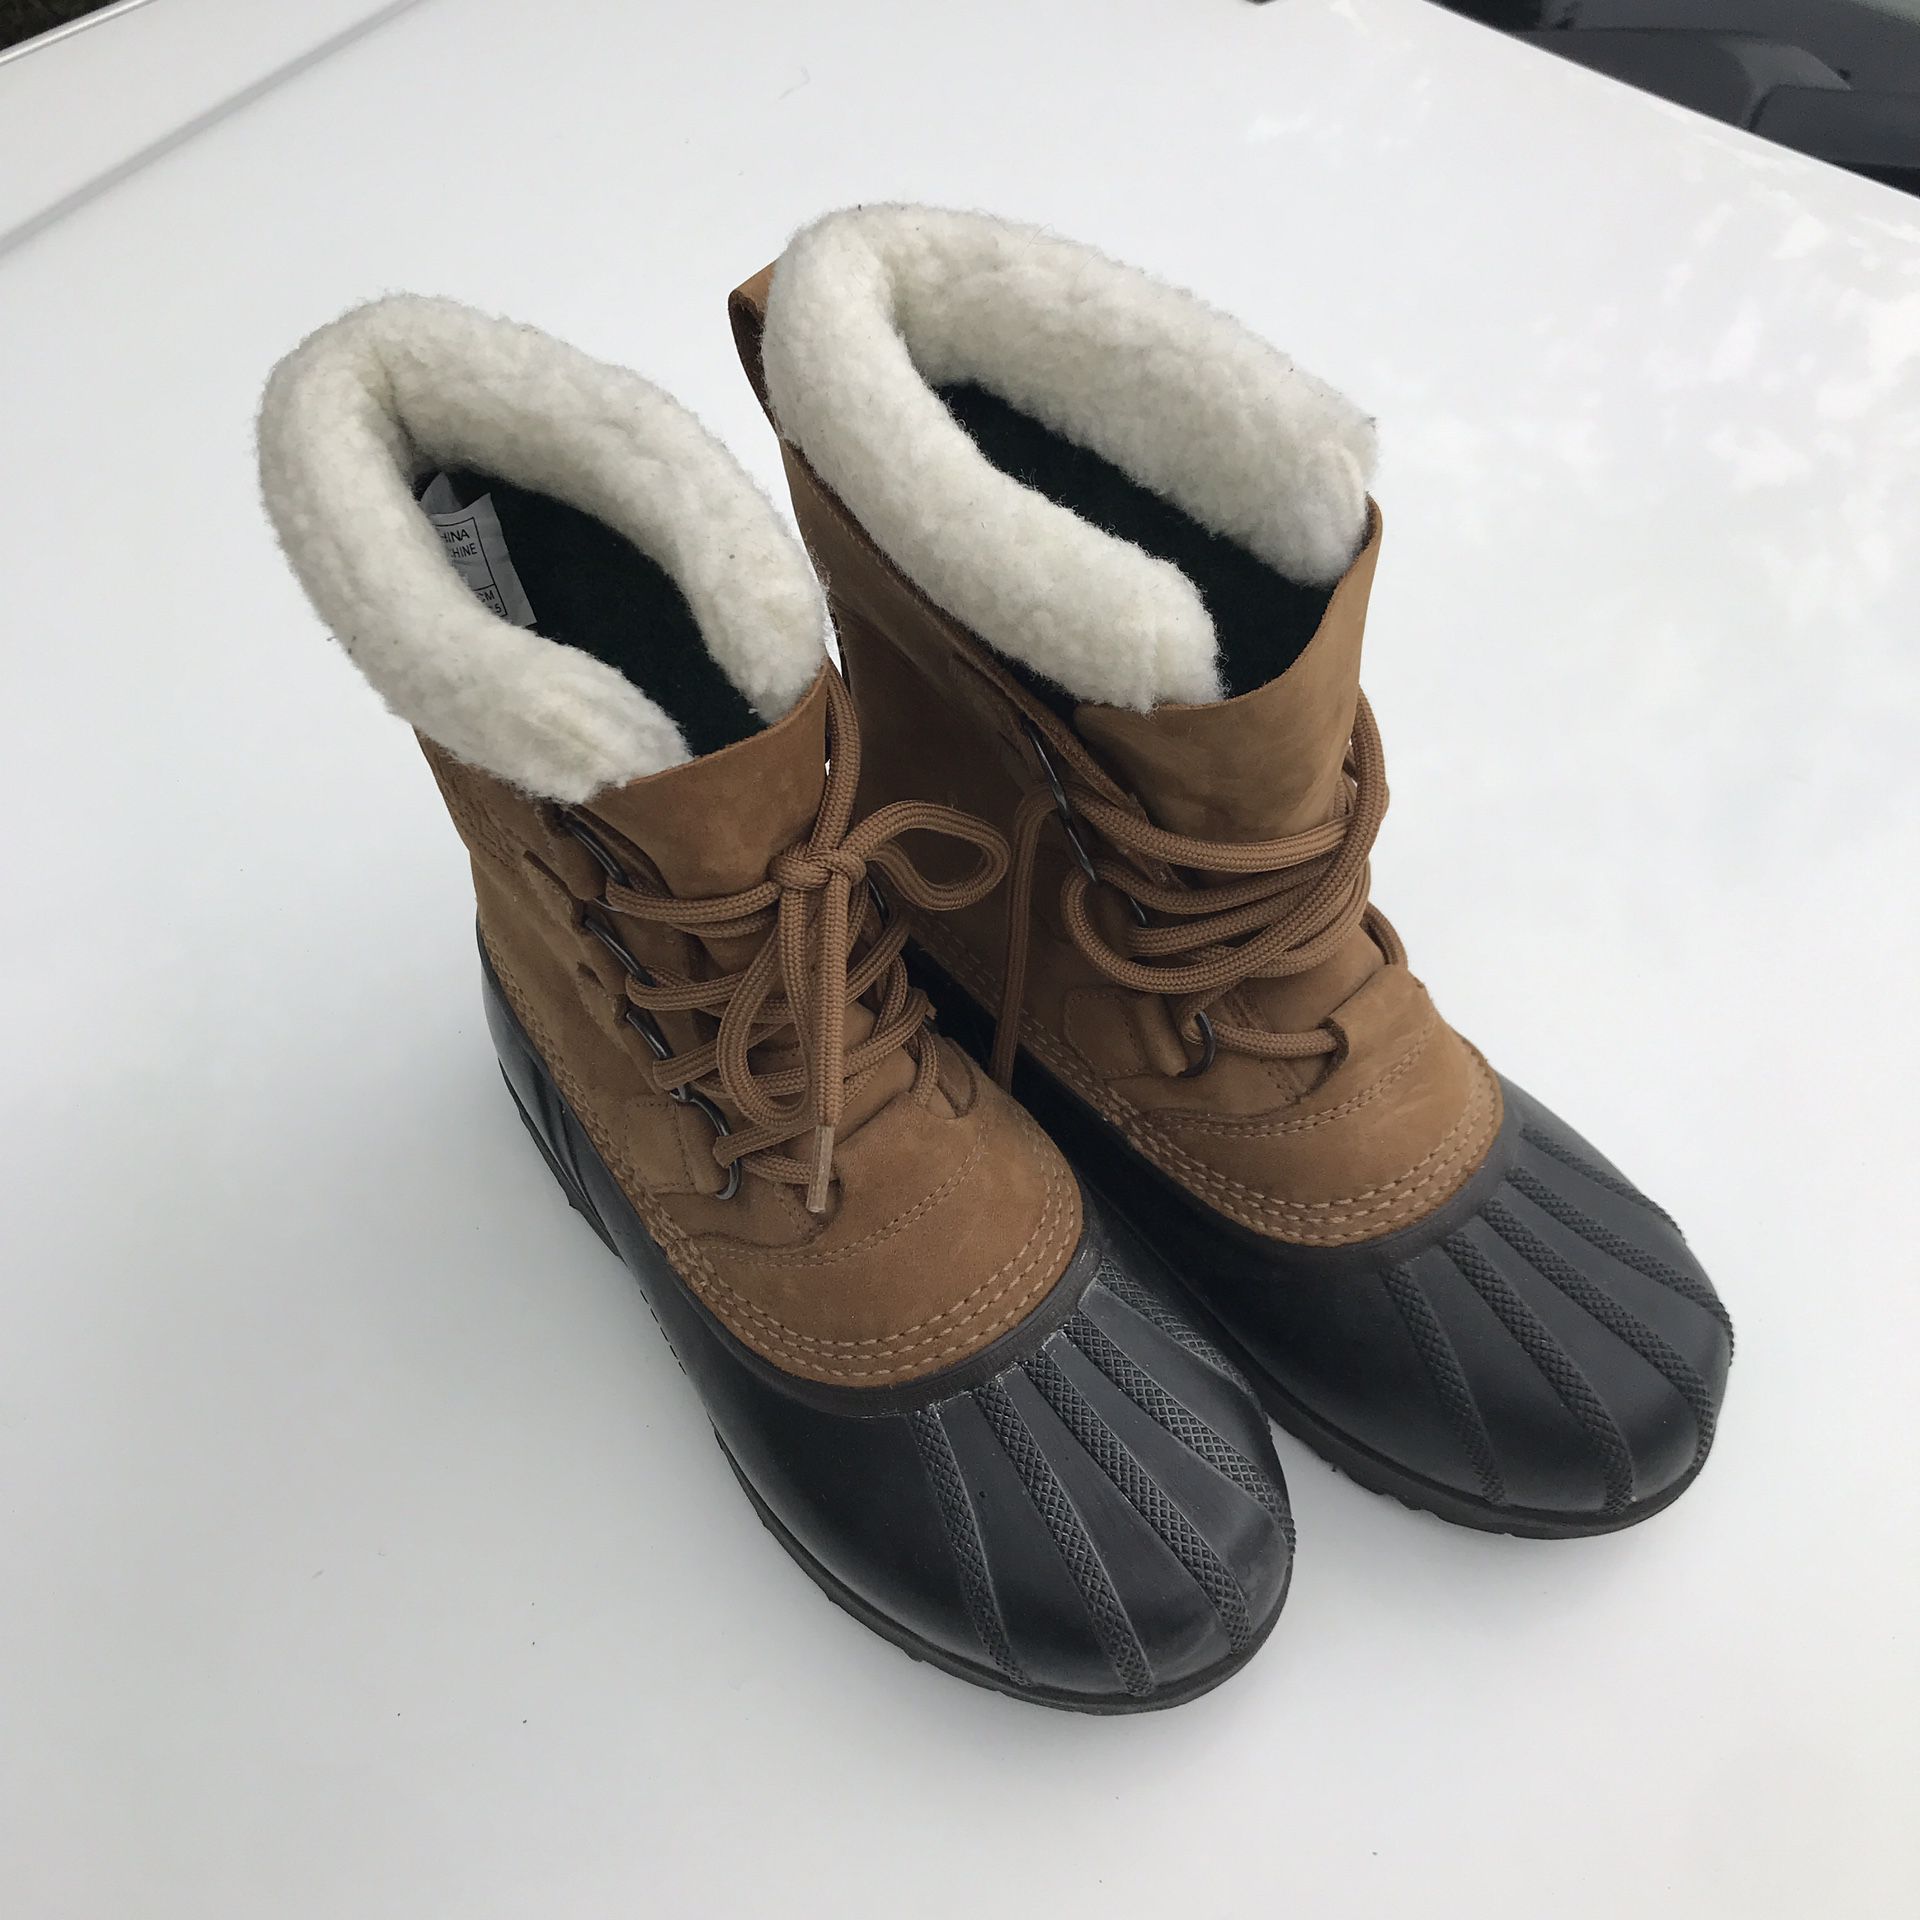 Sorel Caribou Waterproof Boots Women’s Size 6 - Worn Once!